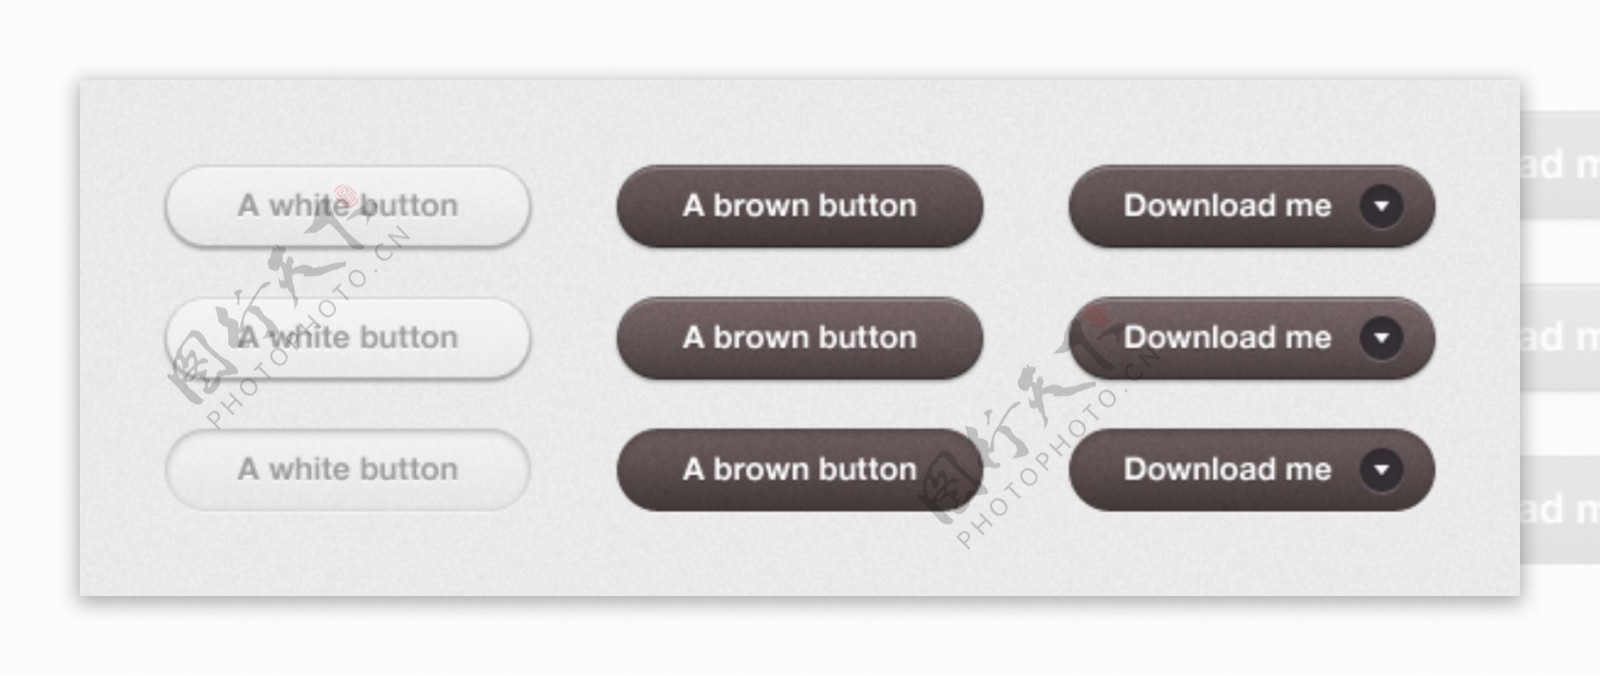 白灰简单UI设计图标按钮素材下载